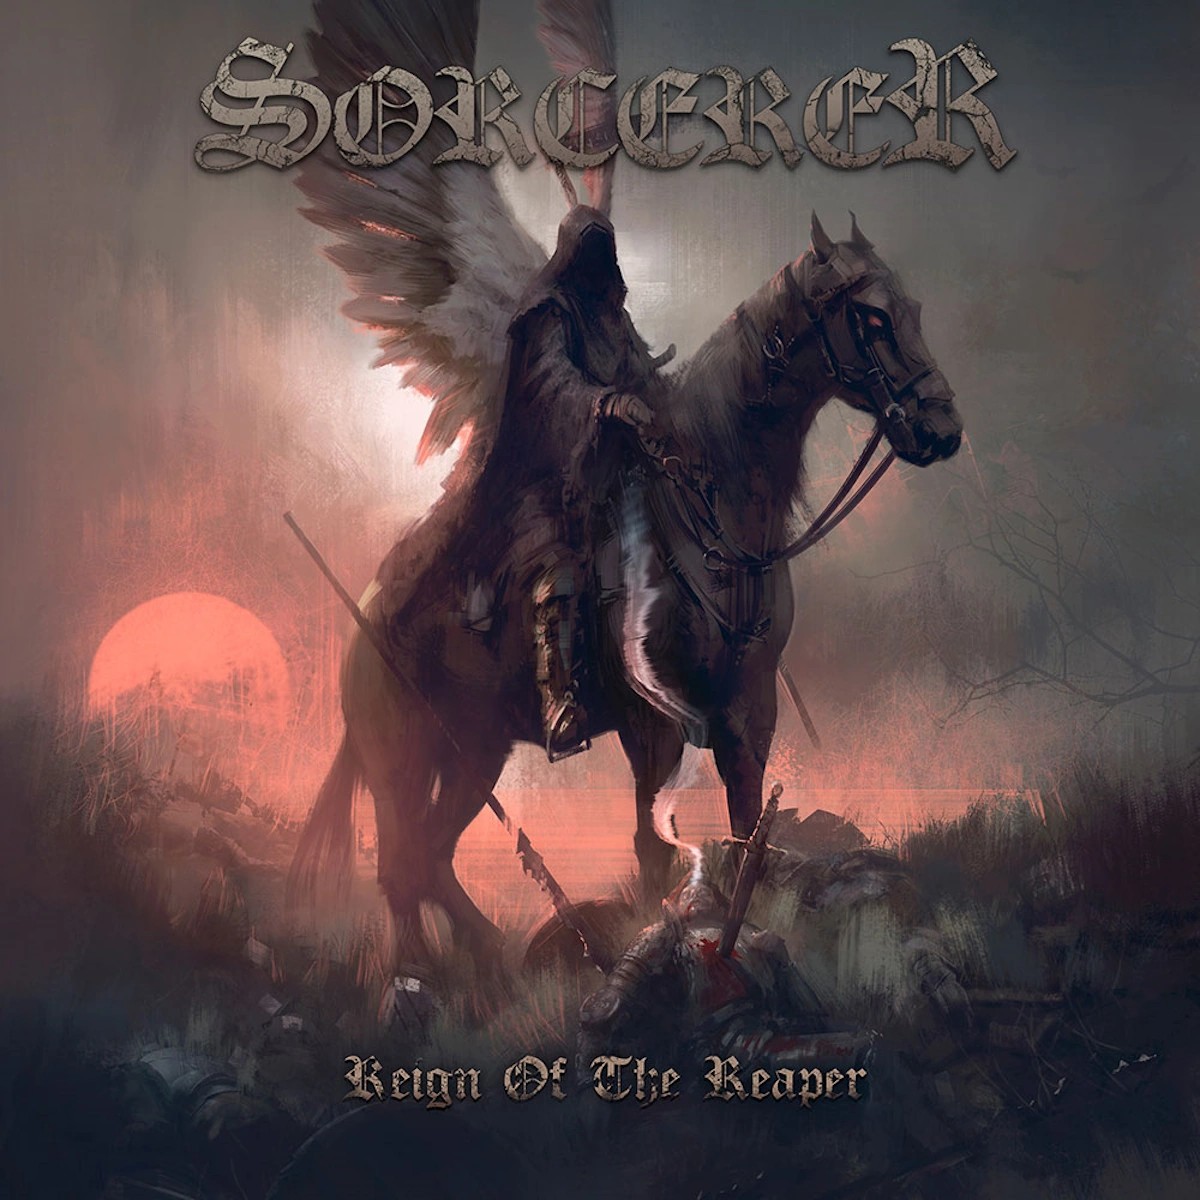 sorcerer-reign-of-the-reaper-album-cover-optimized.jpg